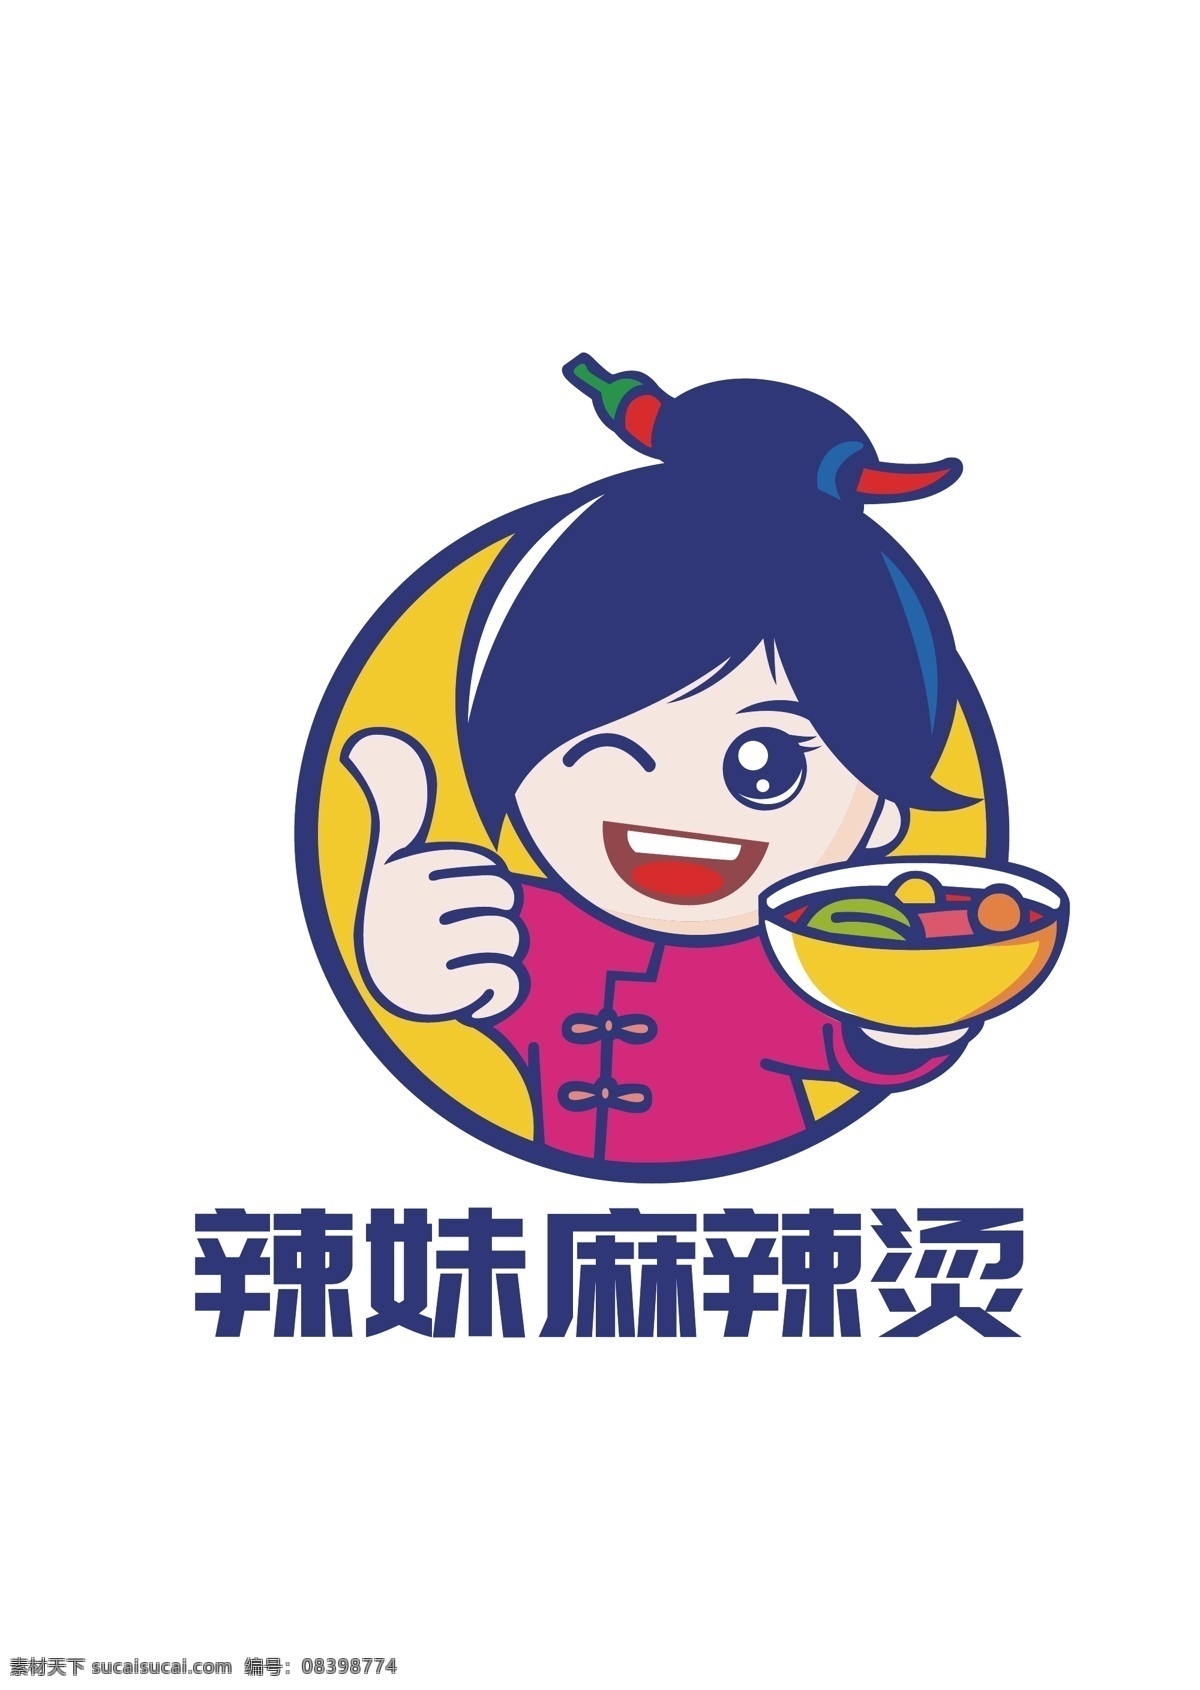 辣妹 麻辣烫 卡通 logo 辣椒 美食 标志 商标 传统美食